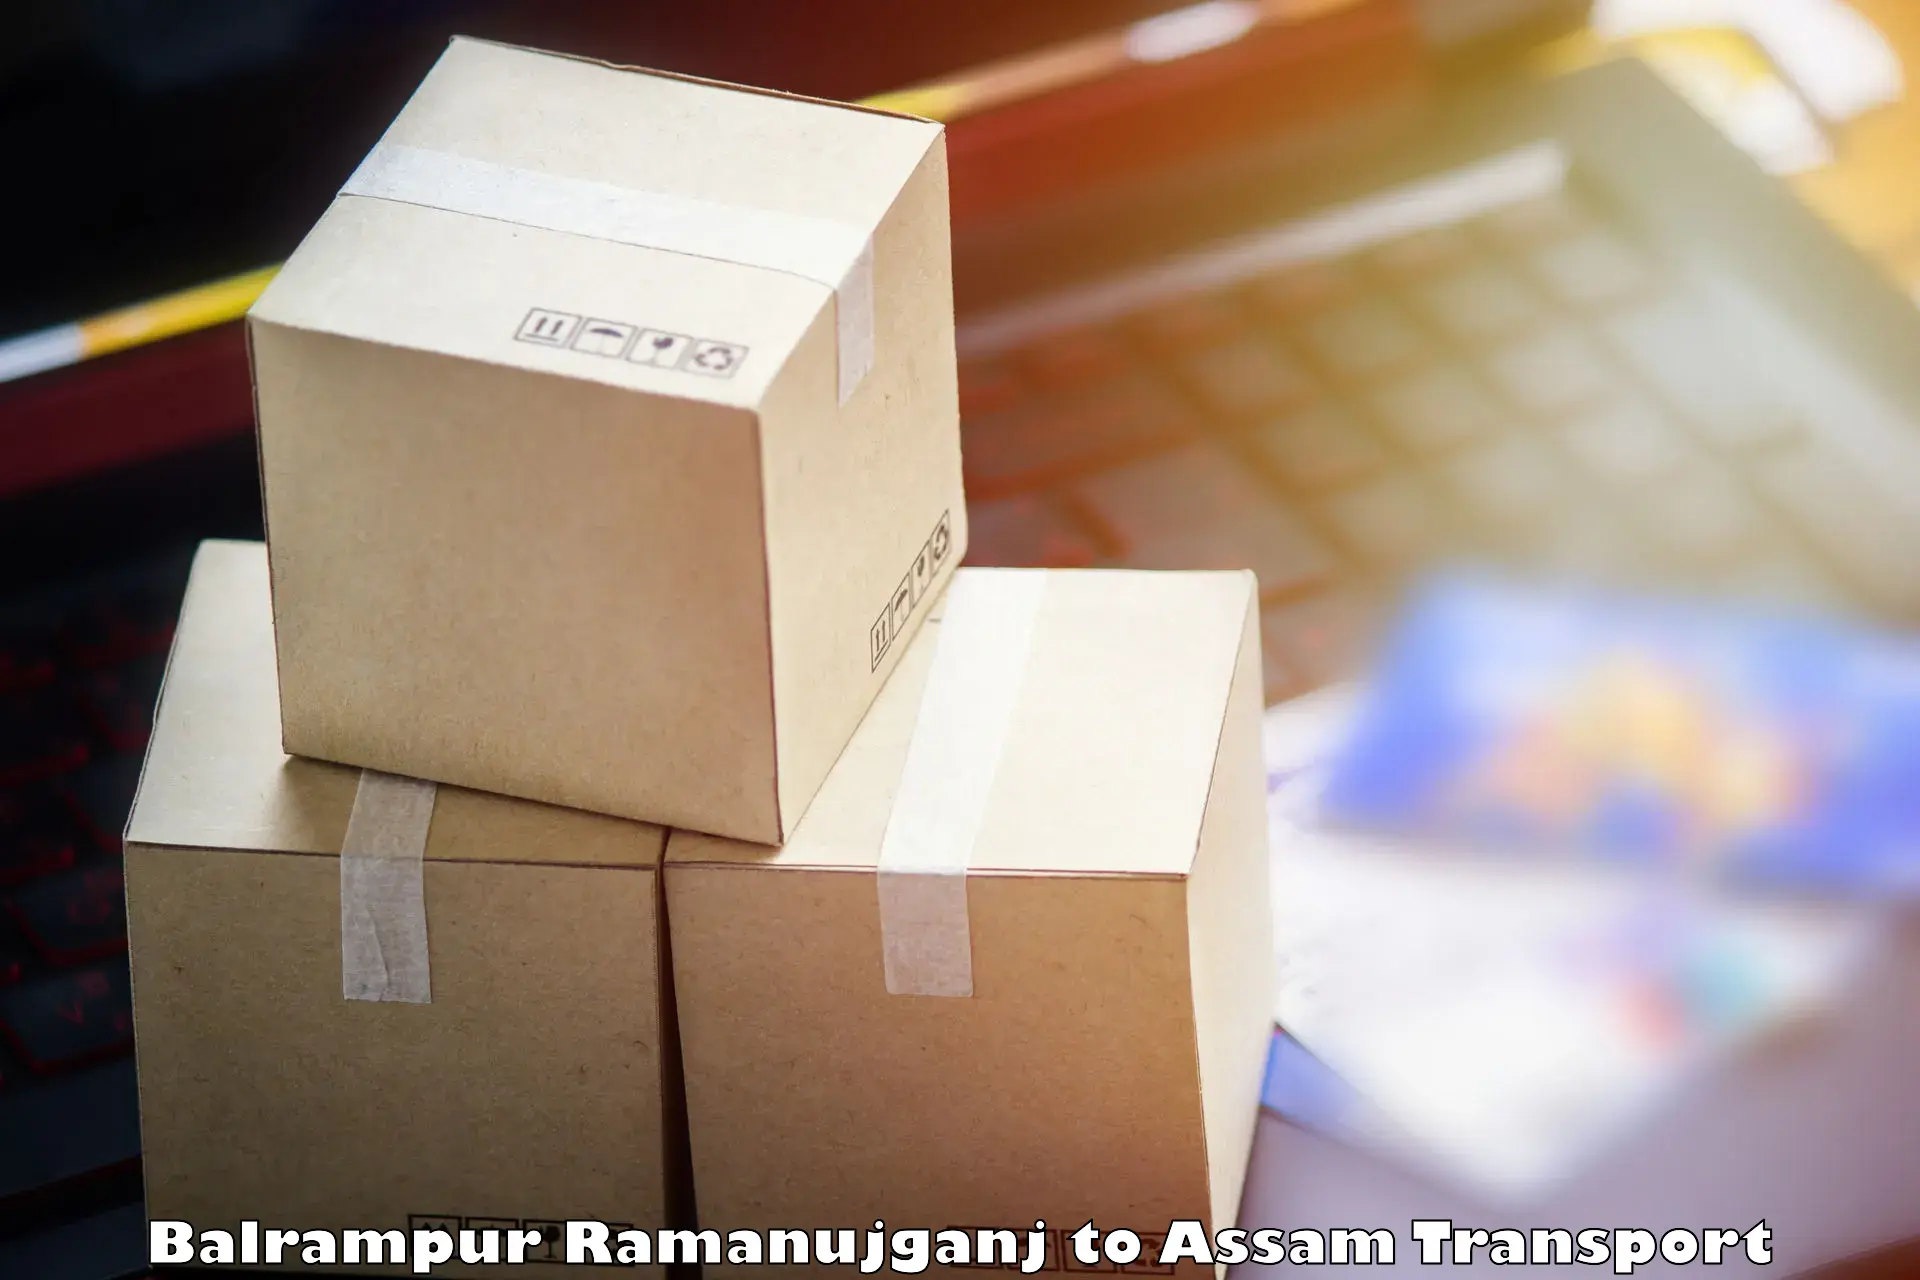 Furniture transport service Balrampur Ramanujganj to Silchar